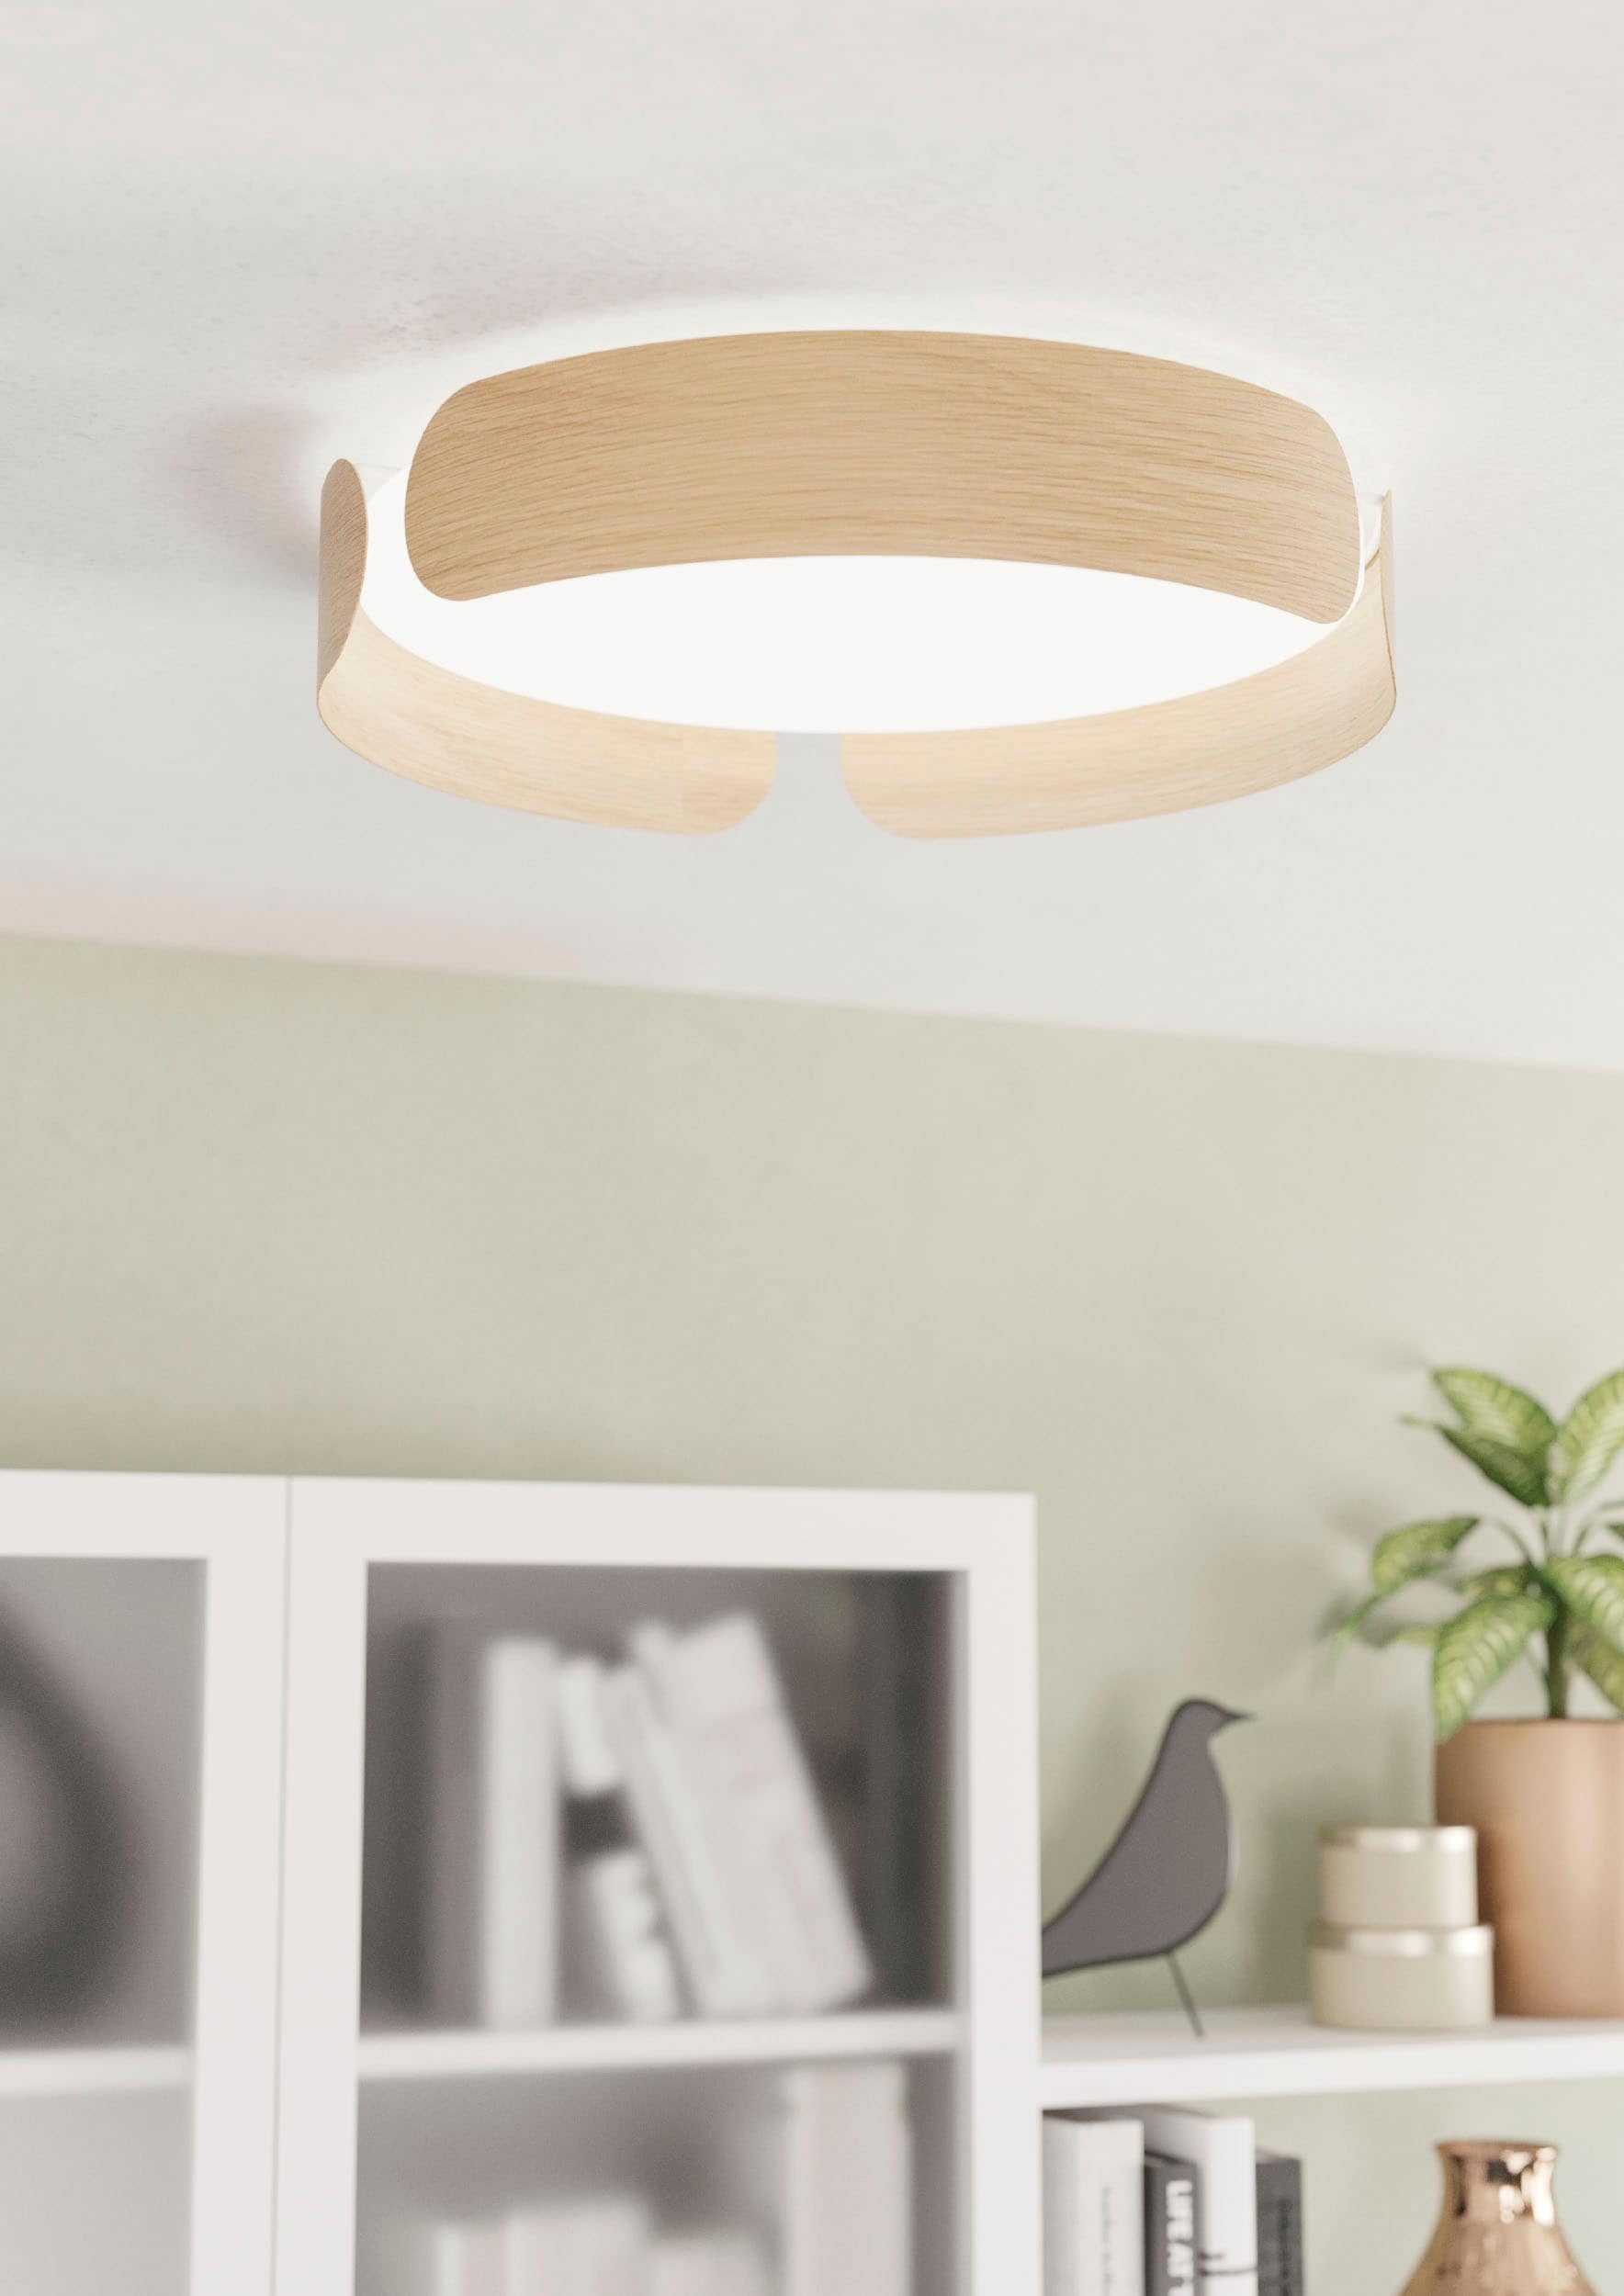 EGLO Deckenleuchte online bei Deckenlampe, Decke LED Lampe Schlafzimmerlampe, »VALCASOTTO«, OTTO bestellen Wohnzimmerlampe